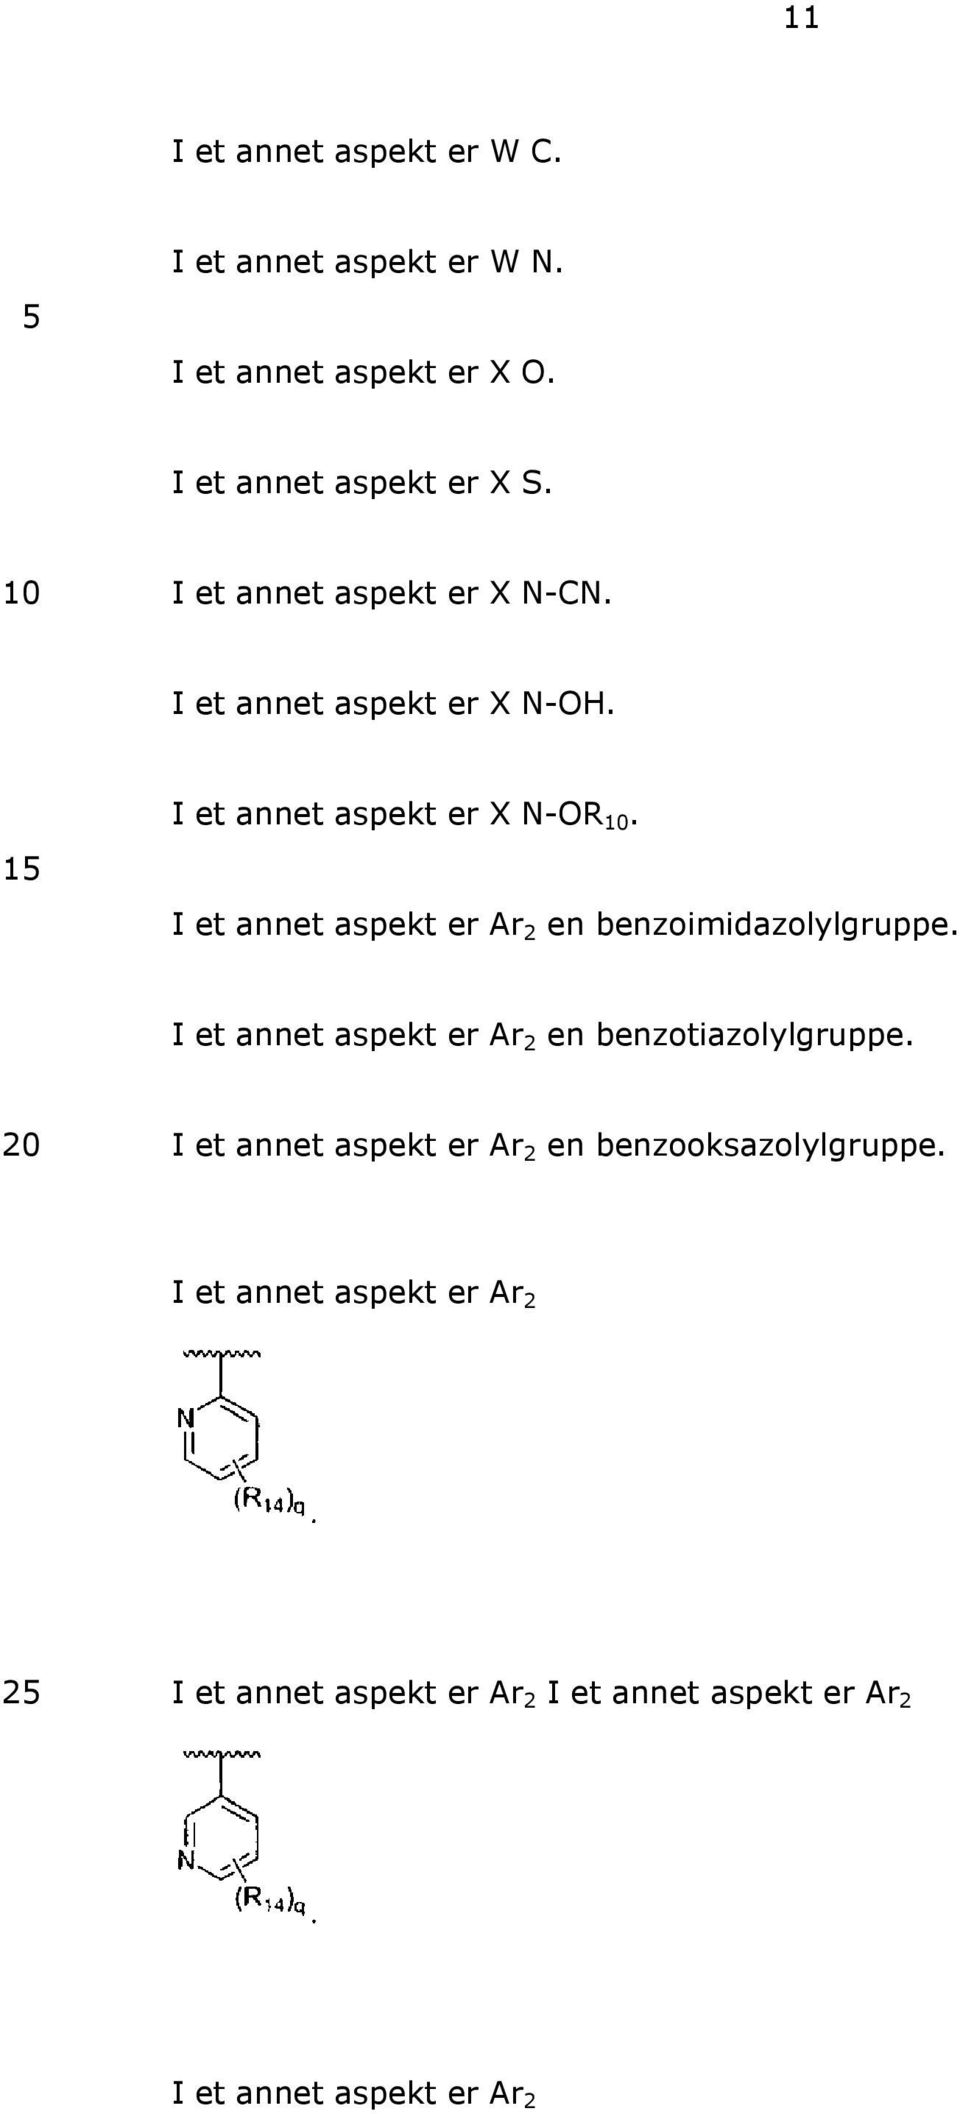 I et annet aspekt er Ar 2 en benzoimidazolylgruppe. I et annet aspekt er Ar 2 en benzotiazolylgruppe.